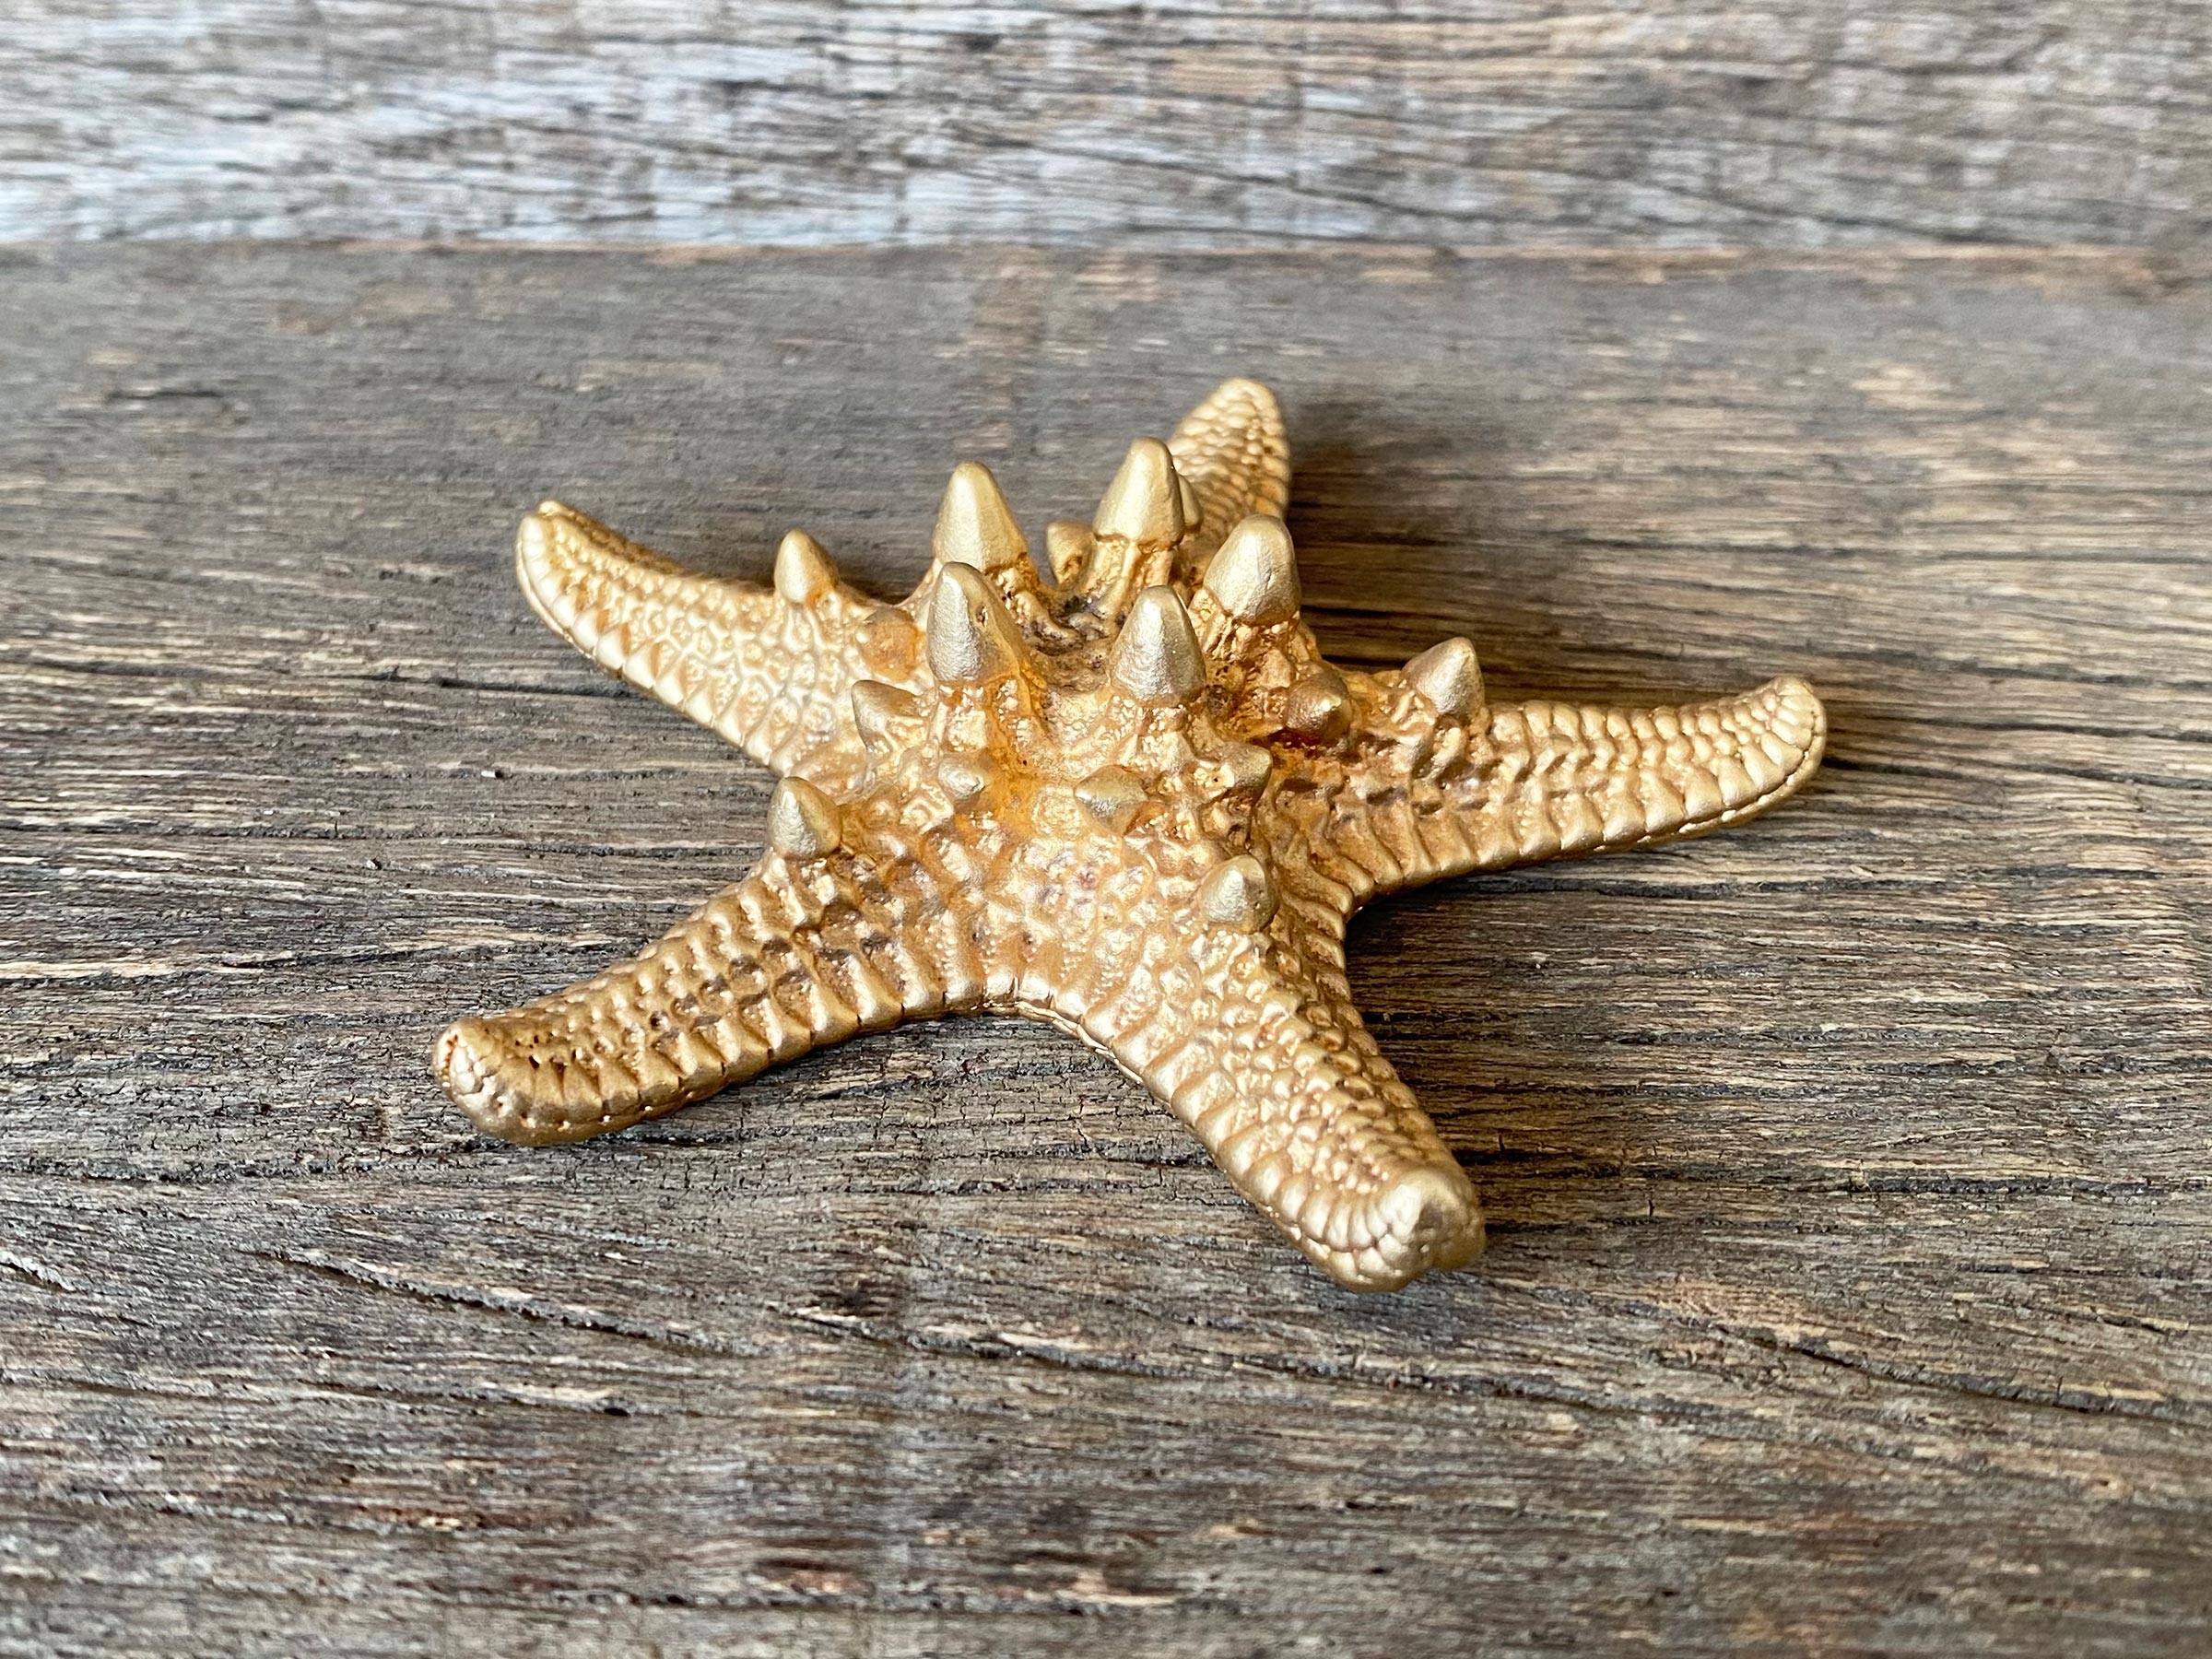 Thorny Starfish